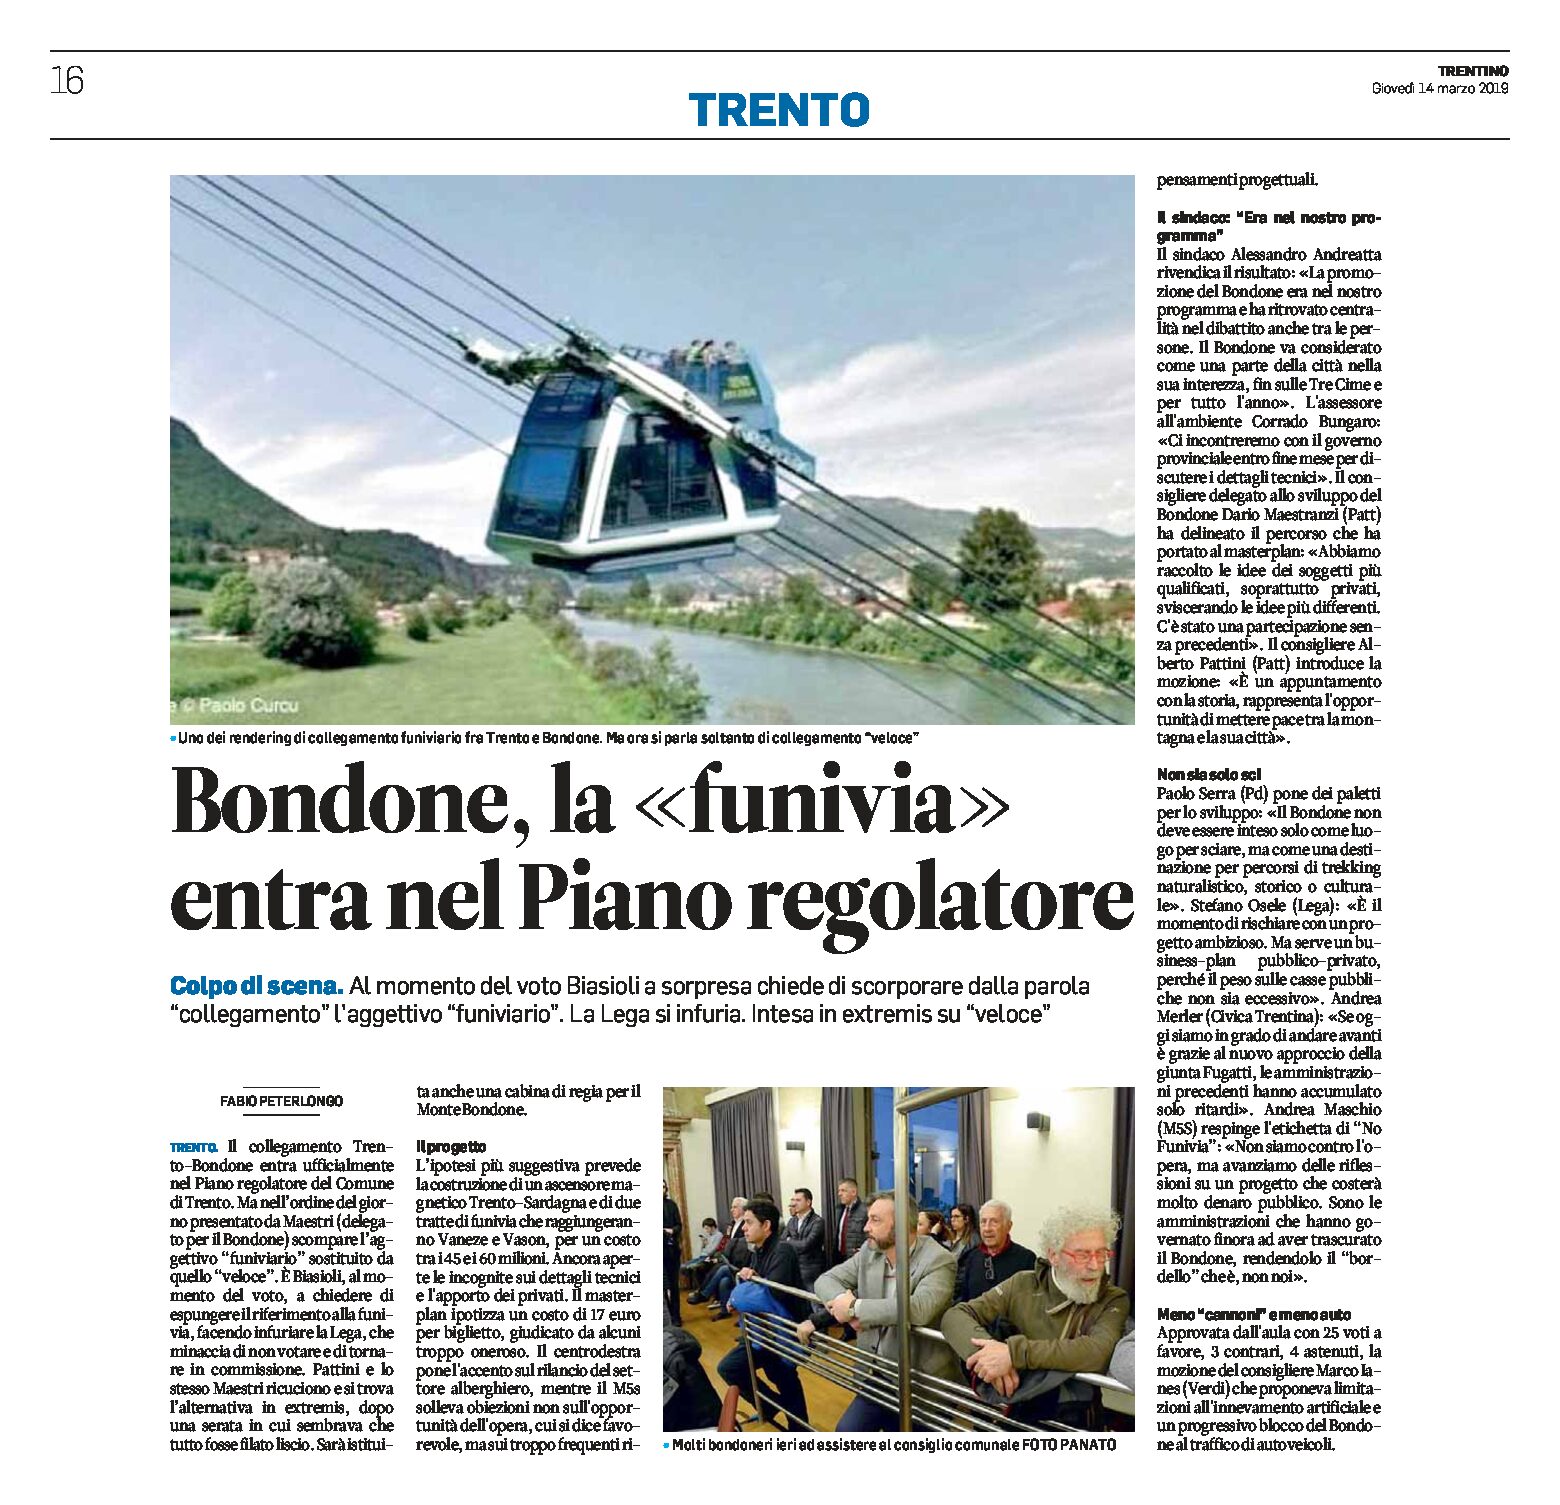 Trento-Bondone: la funivia entra nel Piano regolatore